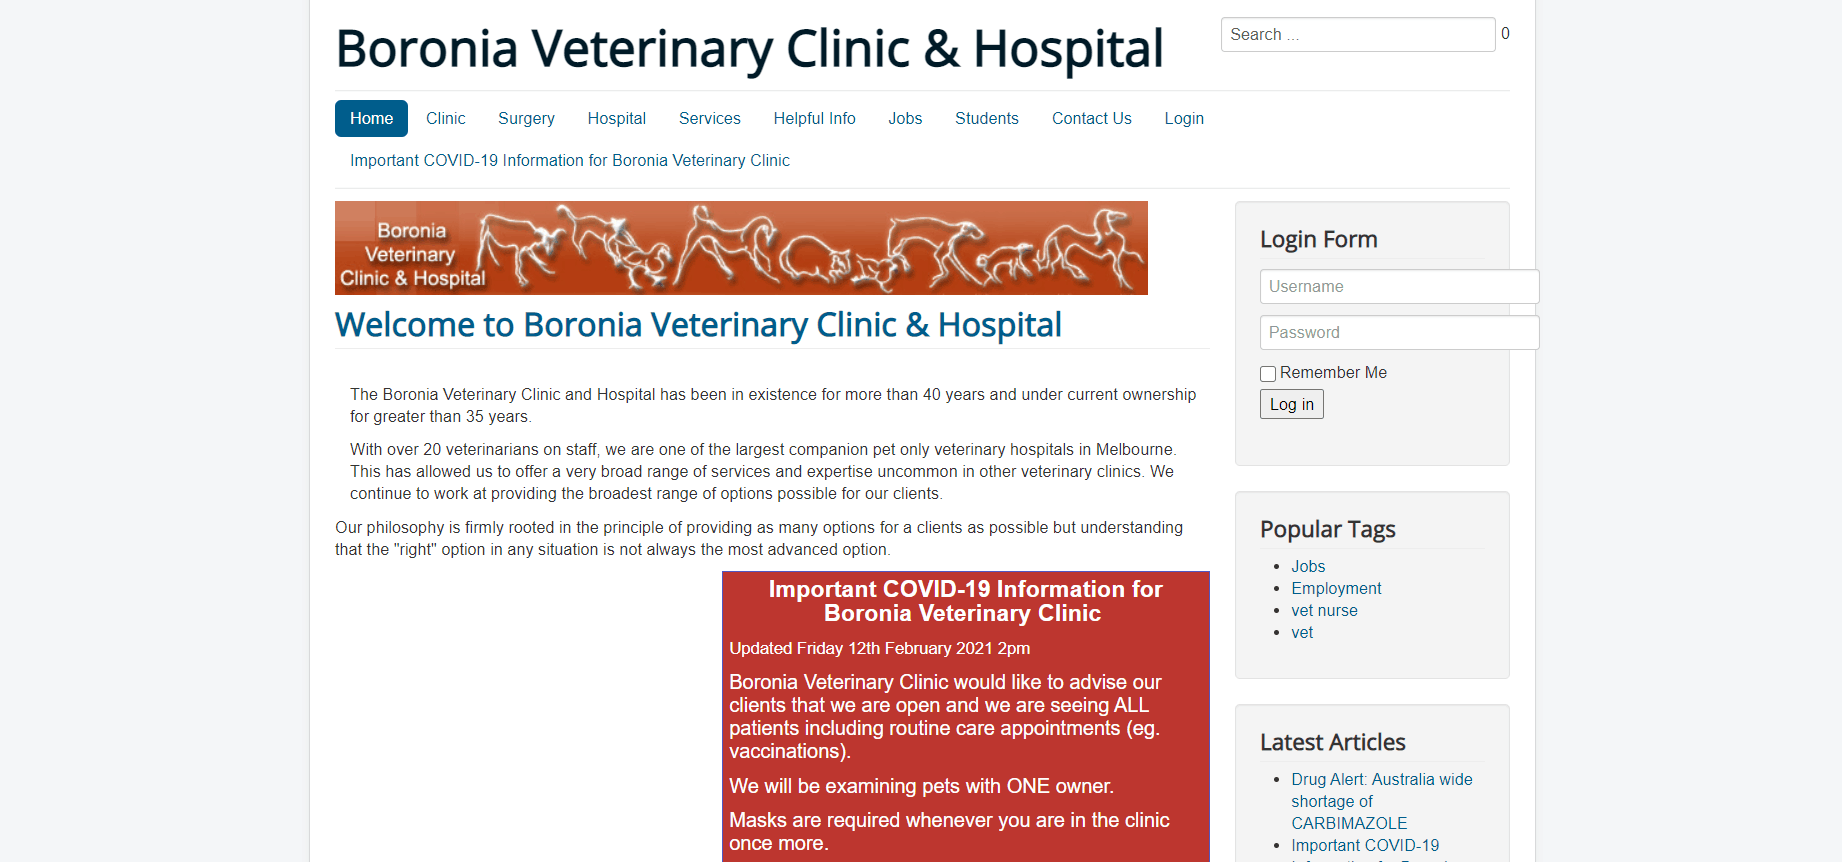 Boronia Veterinary Clinic & Hospital